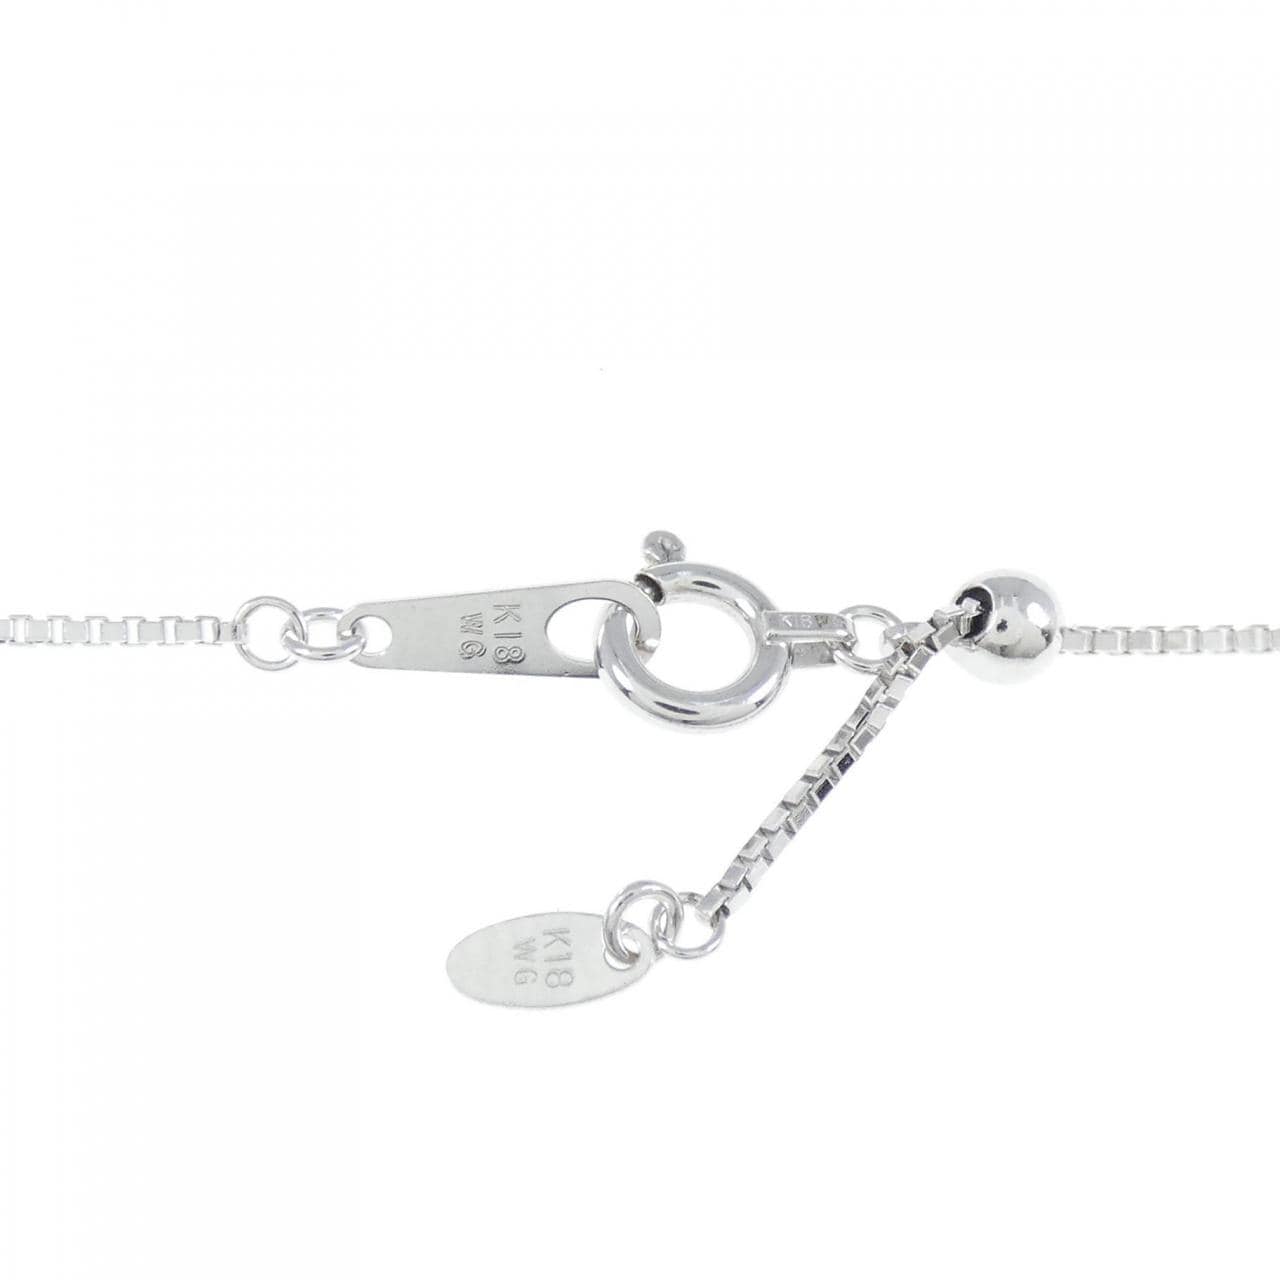 K18WG Aquamarine necklace 1.98CT